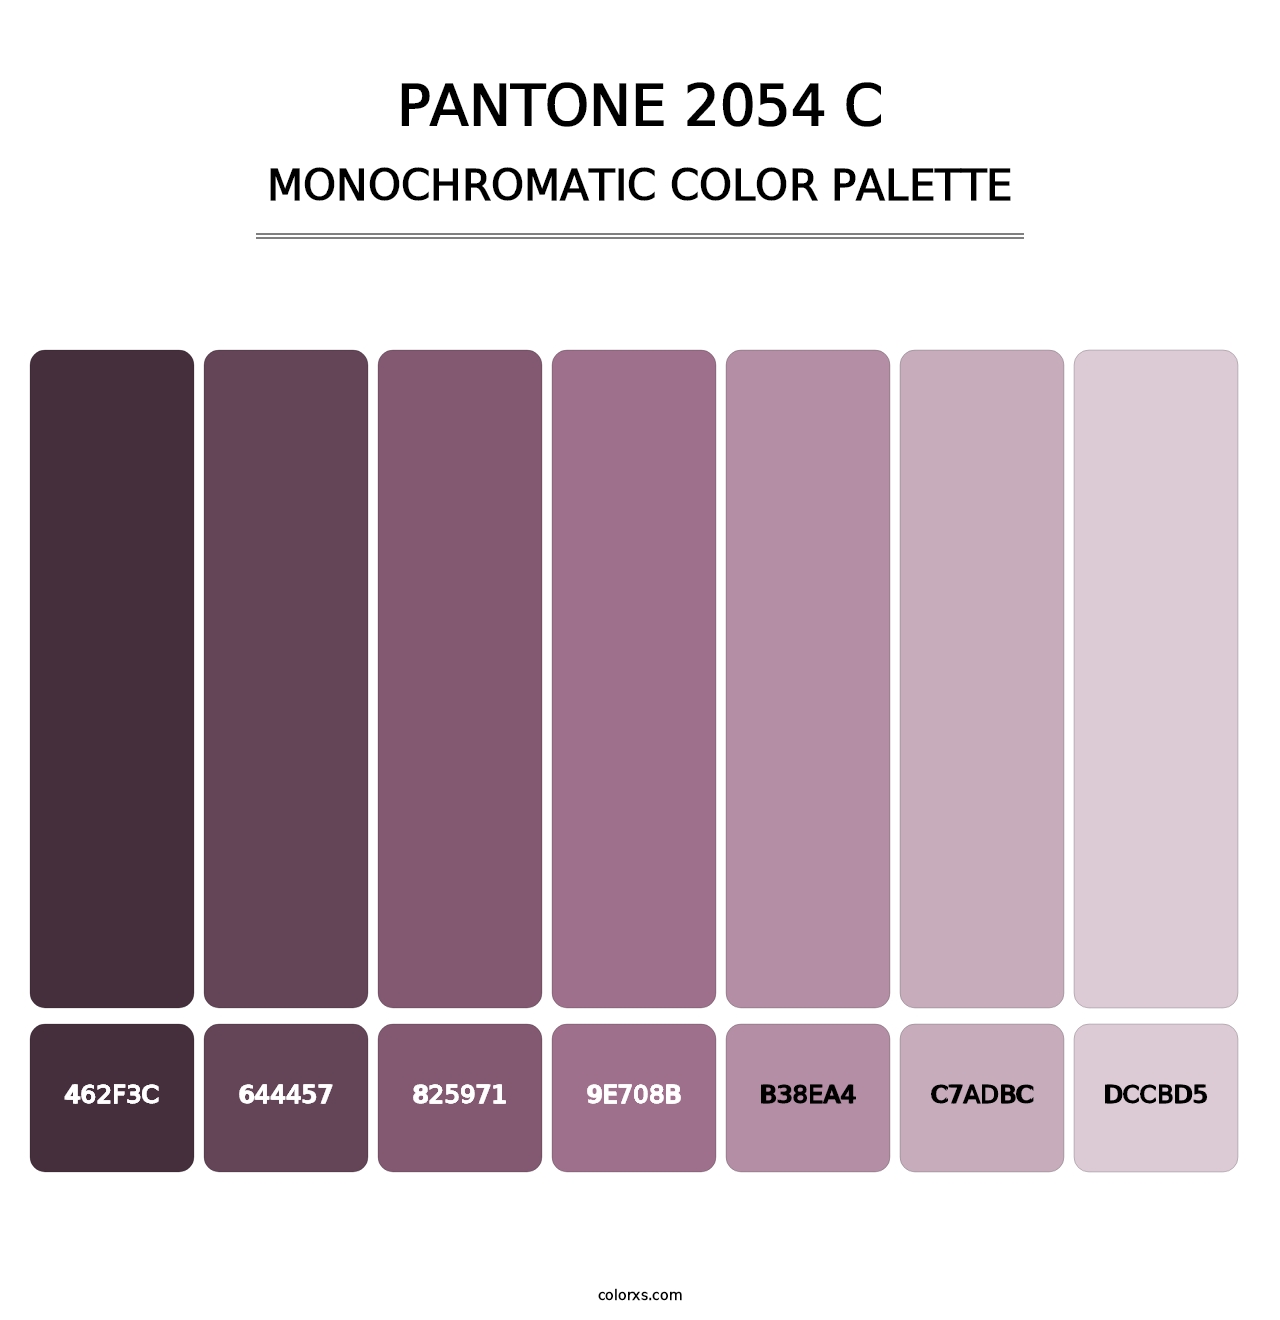 PANTONE 2054 C - Monochromatic Color Palette